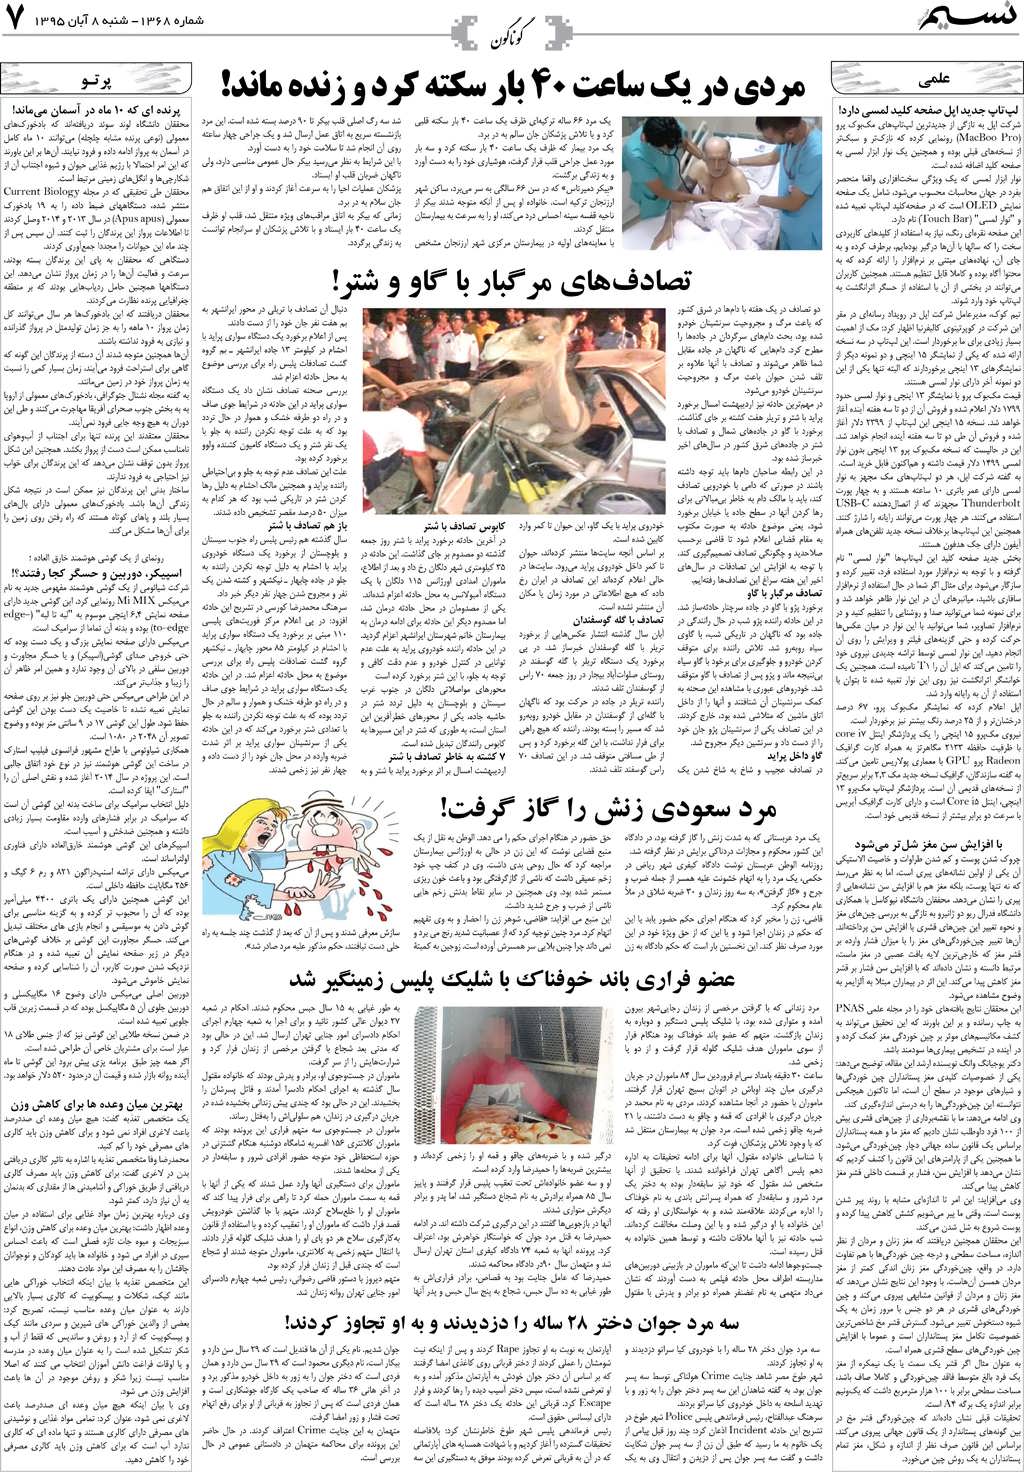 صفحه گوناگون روزنامه نسیم شماره 1368